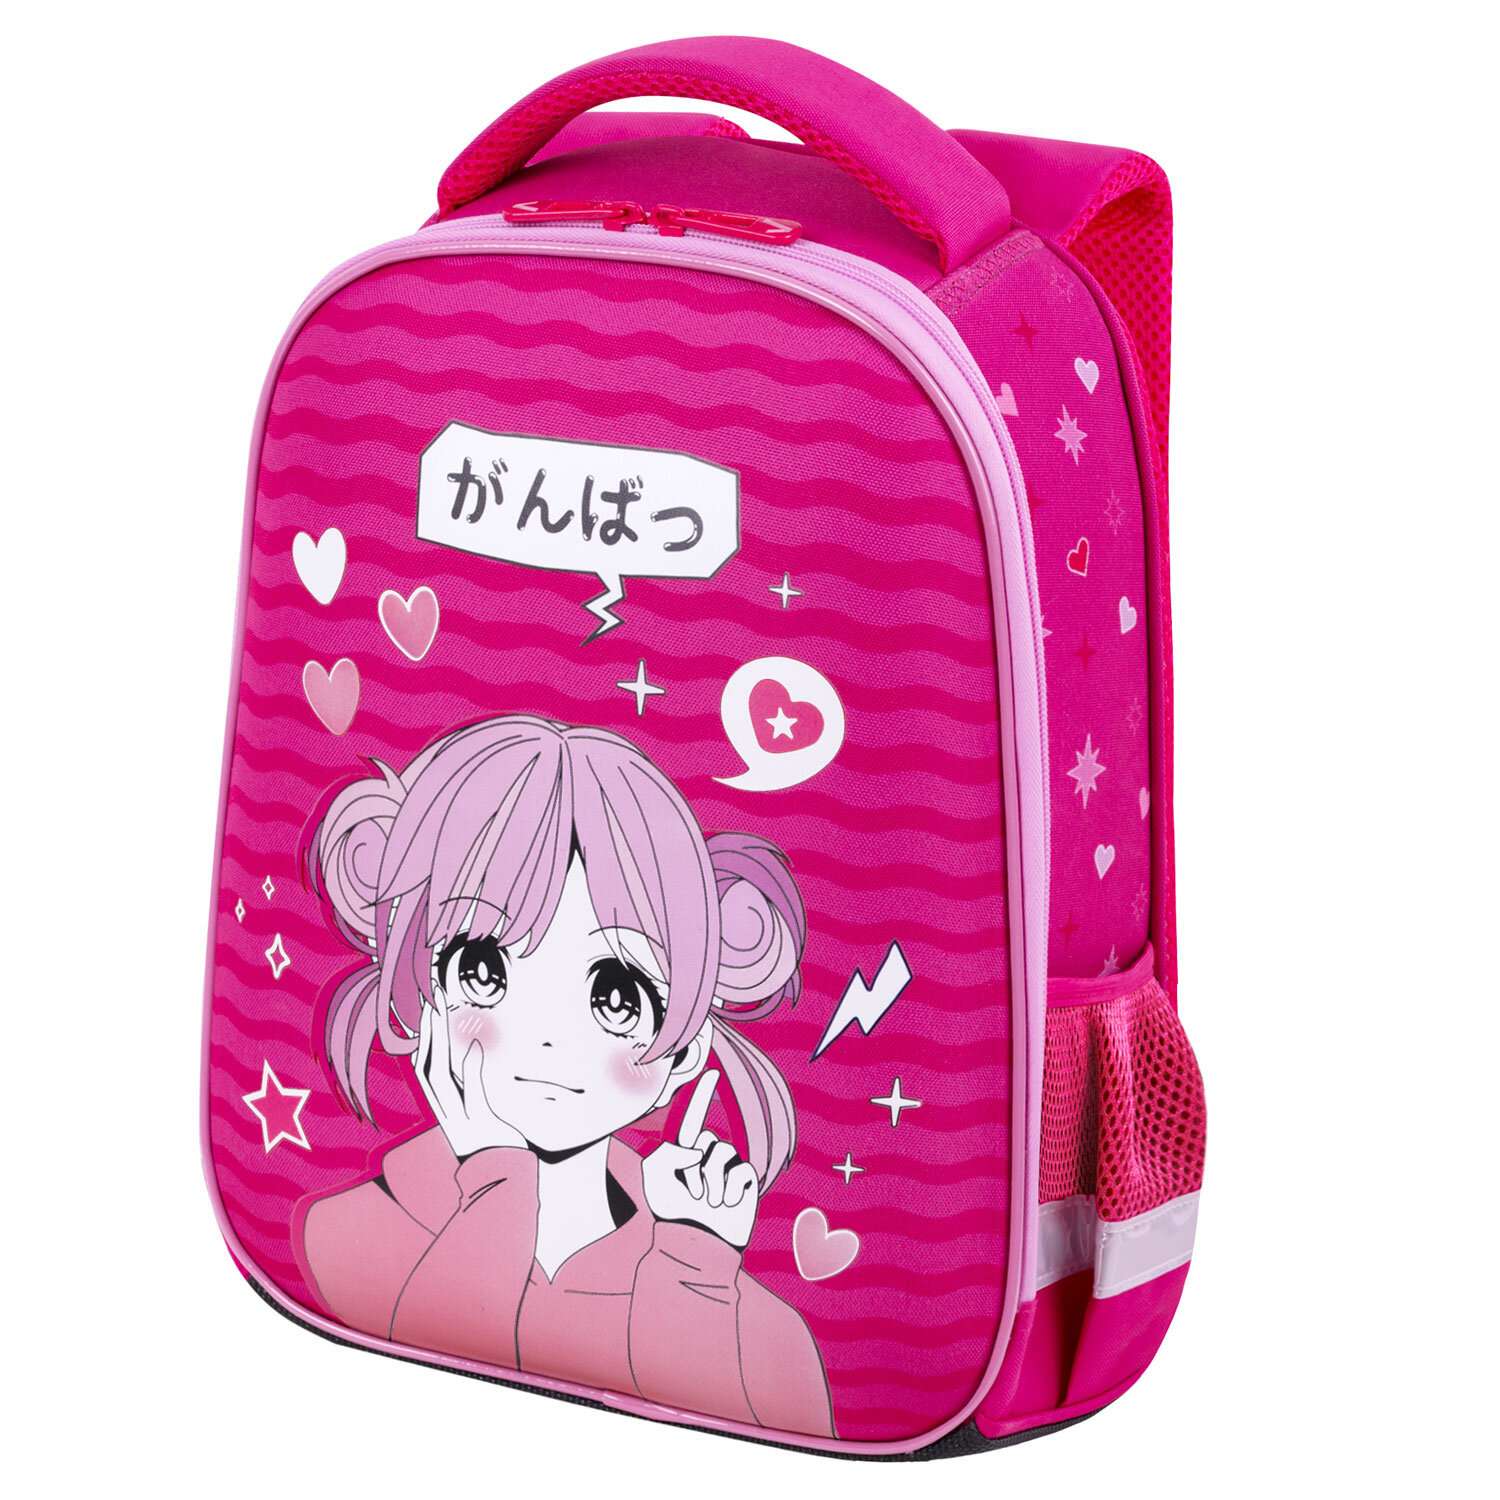 Рюкзак школьный Brauberg портфель детский ранец в 1 класс - фото 4